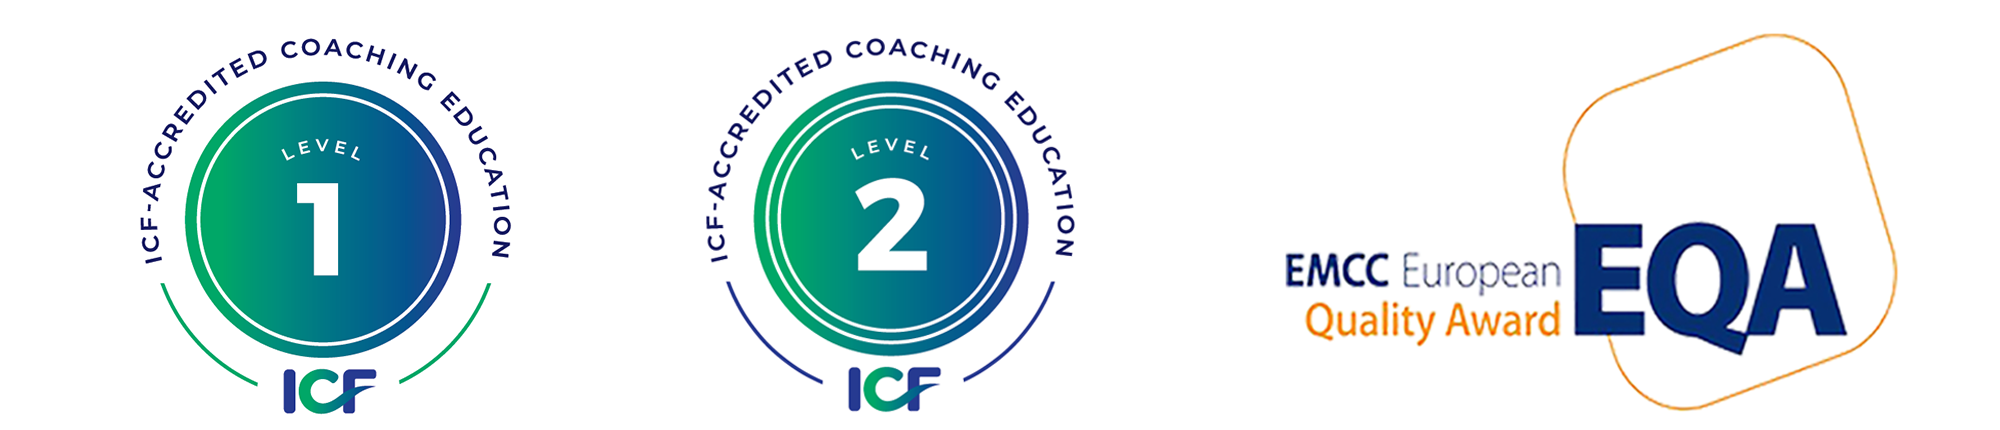 Level 1 Level 2 EQA ICF EMCC Logos